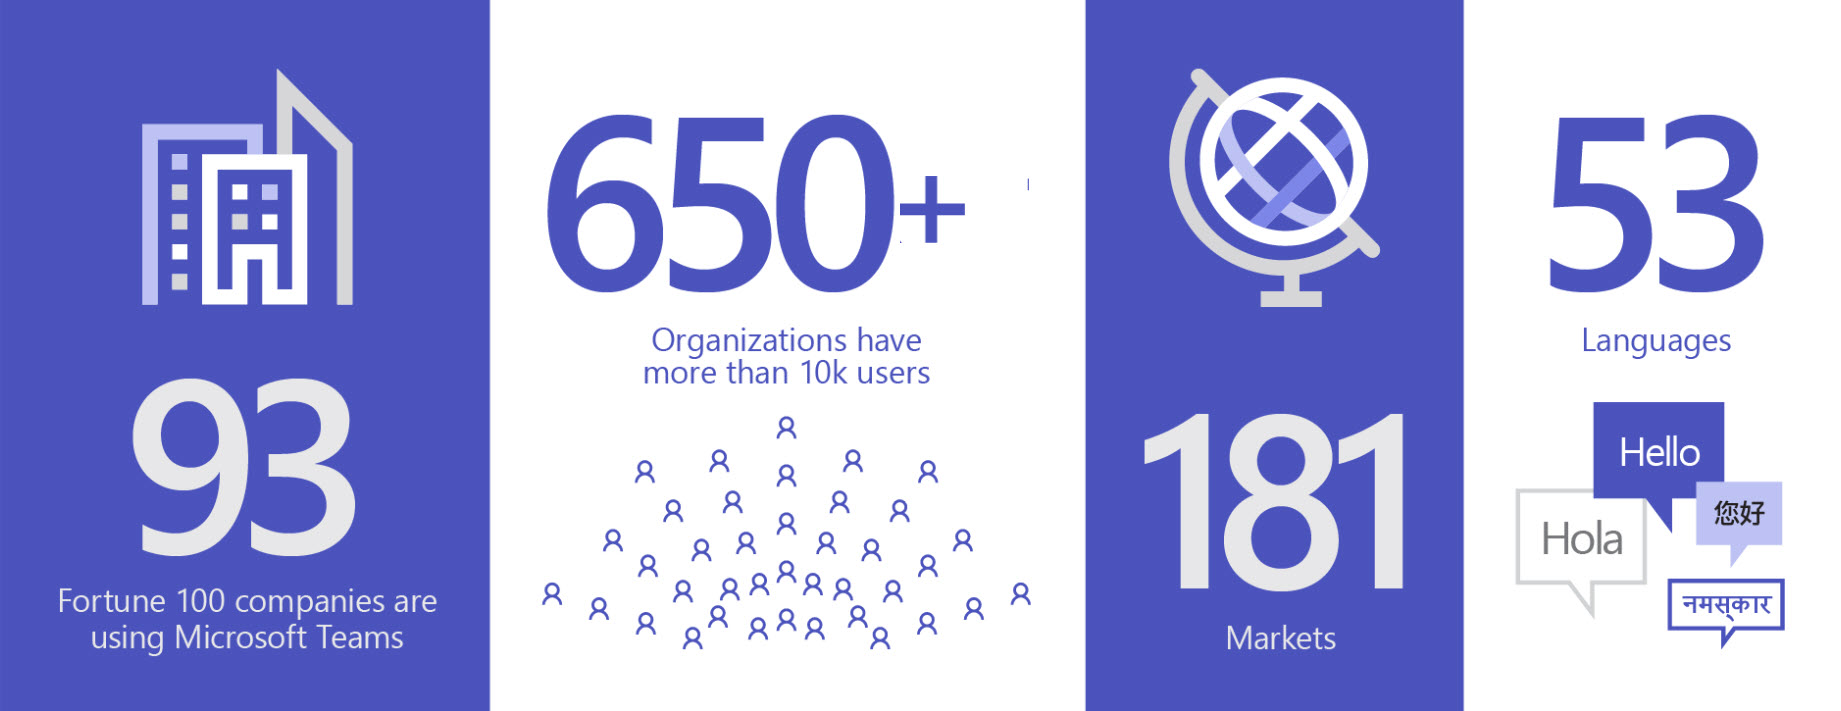 图片显示 93 个组织在使用 Teams，650 多个组织有超过 1 万的用户，181 个市场和 53 种语言。